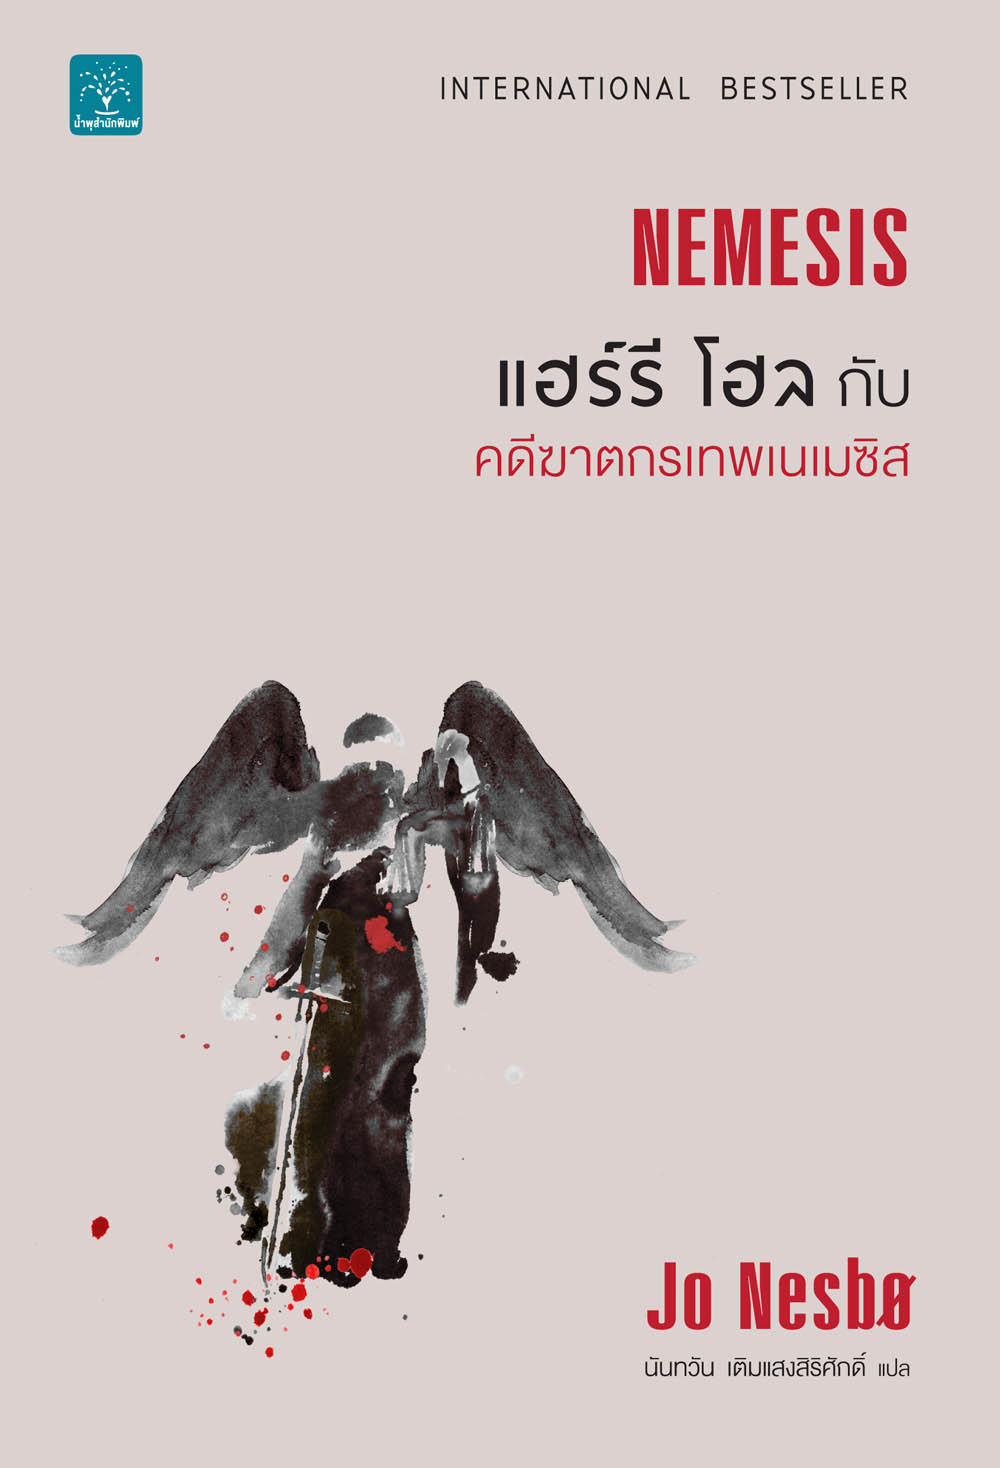 แฮร์รี โฮลกับคดีฆาตกรเทพเนเมซิส  (Nemesis)